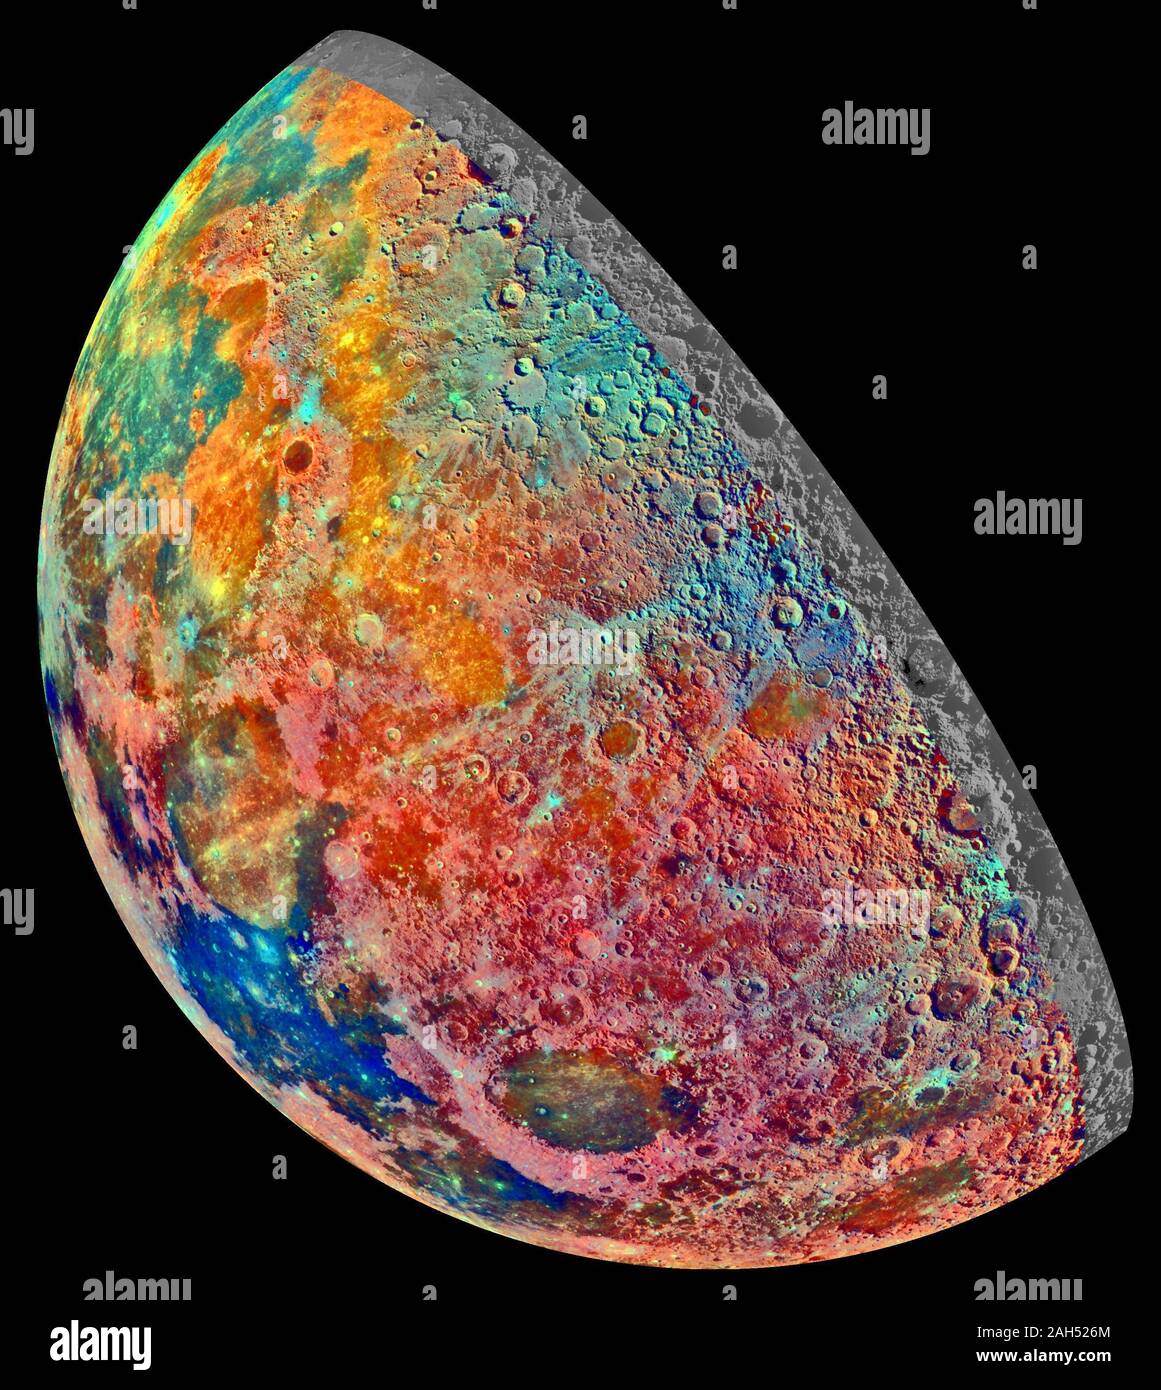 Diese falsche - Farbe Mosaik war aus einer Reihe von 53 Bildern, die durch drei spektrale Filter der NASA Galileo's Imaging System berücksichtigt, da die Sonde in den nördlichen Regionen des Mondes am 7. Dezember 1992 flog gebaut. Stockfoto